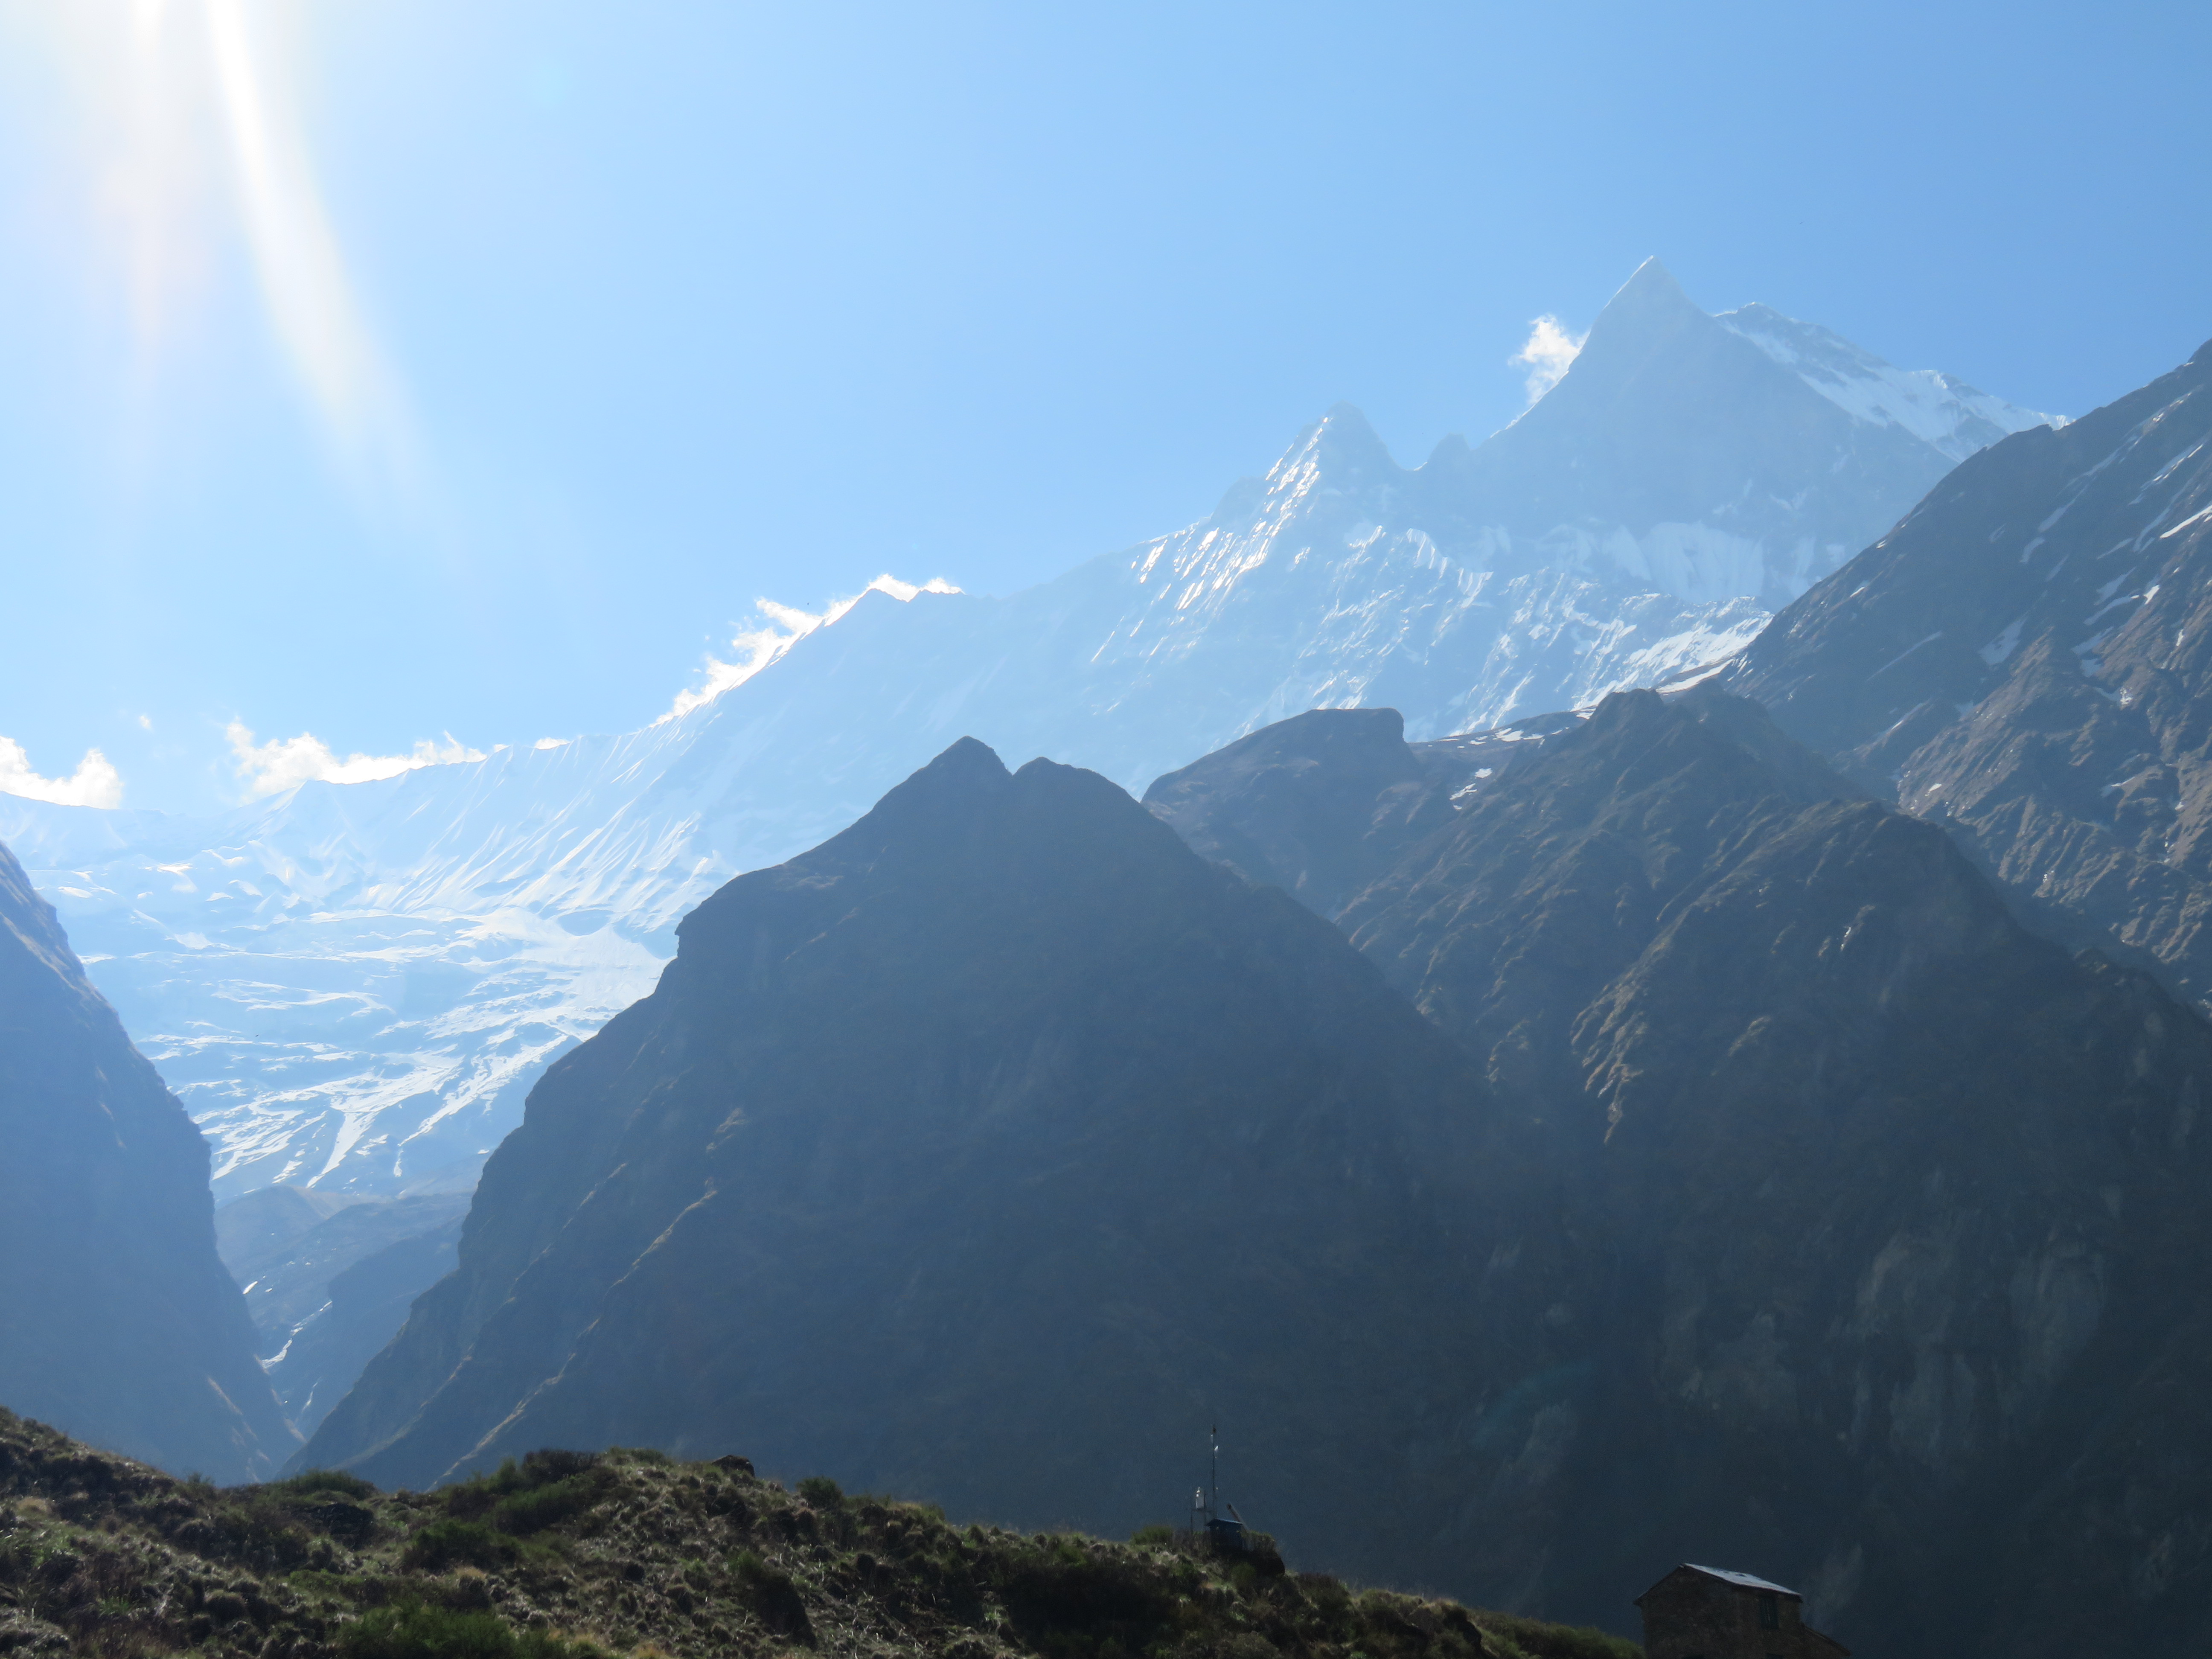 Daily distances on the Annapurna Base Camp Trek